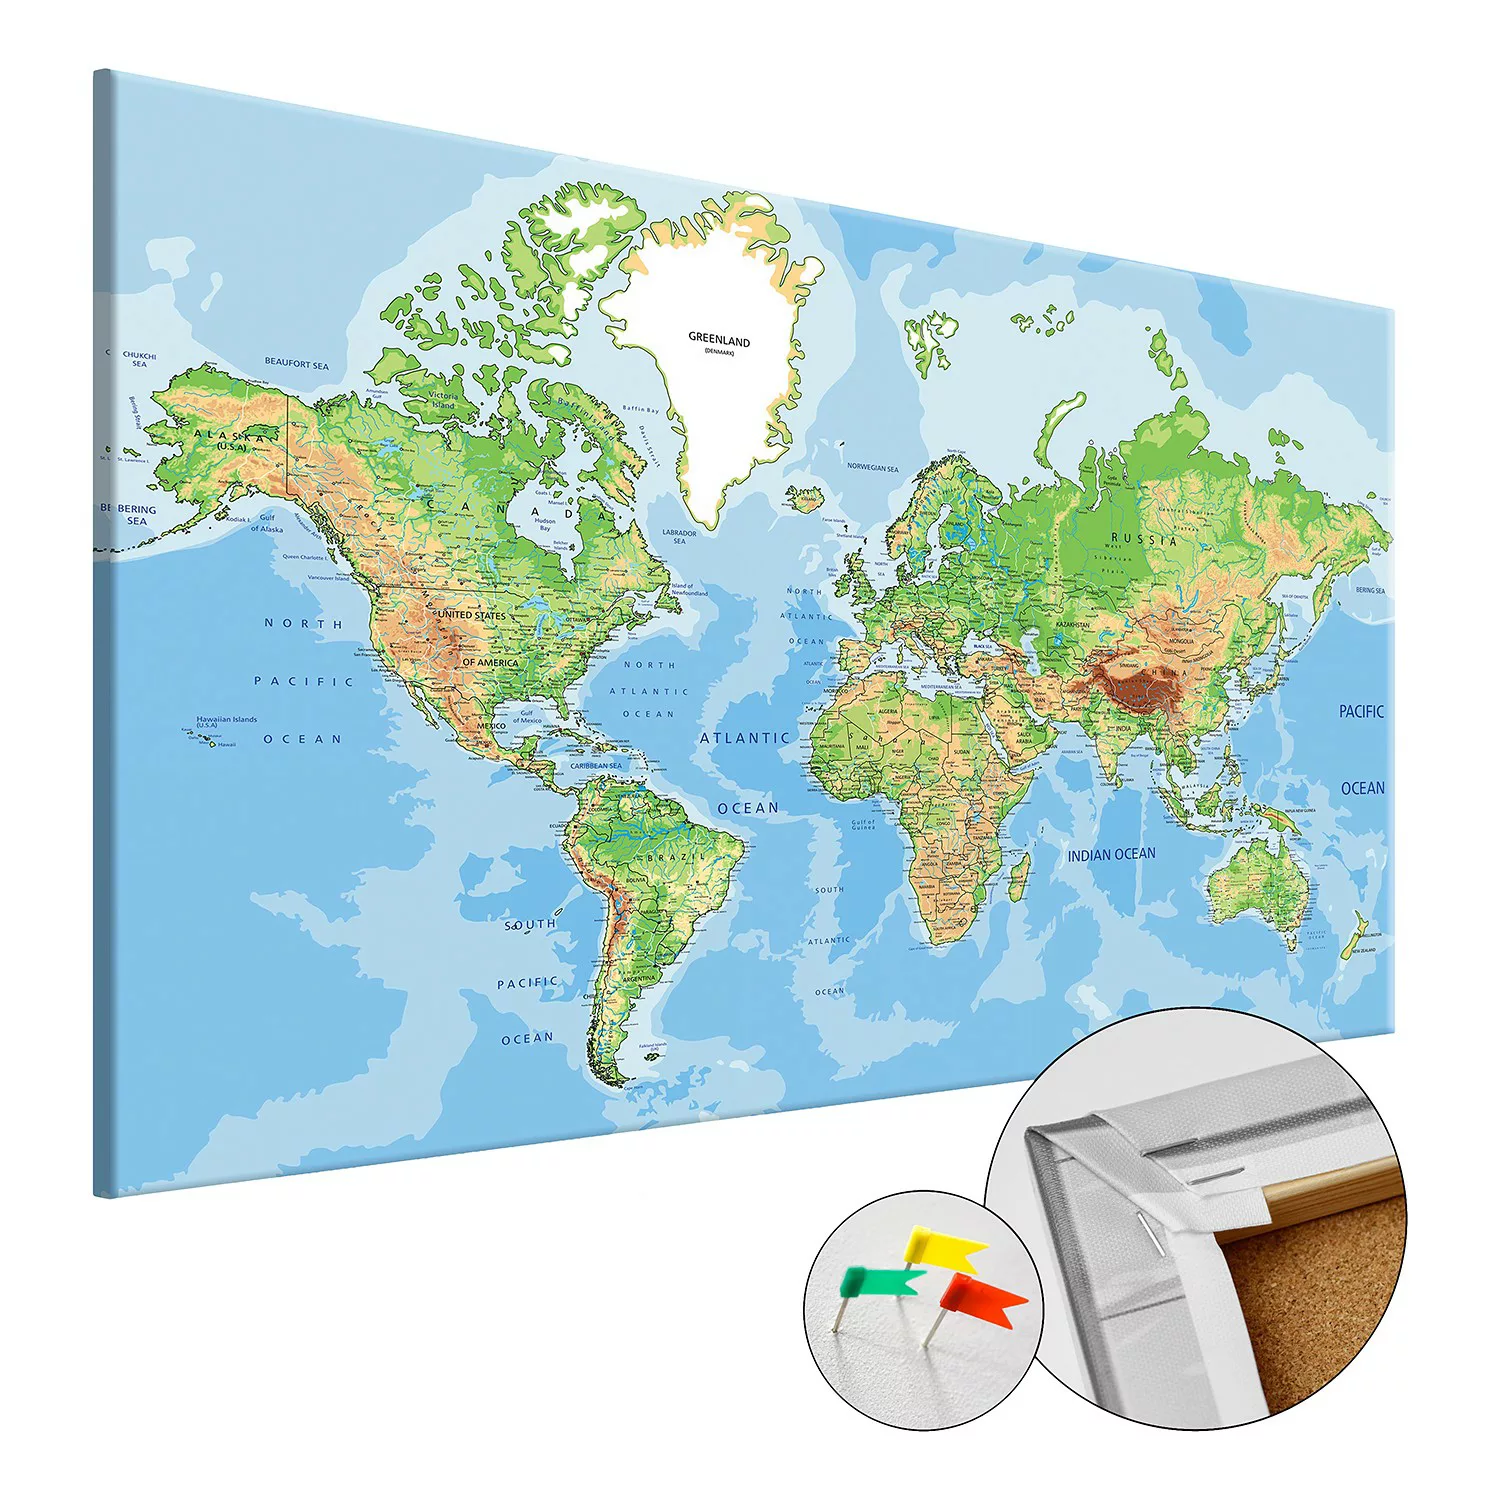 home24 Korkbild World Geography günstig online kaufen